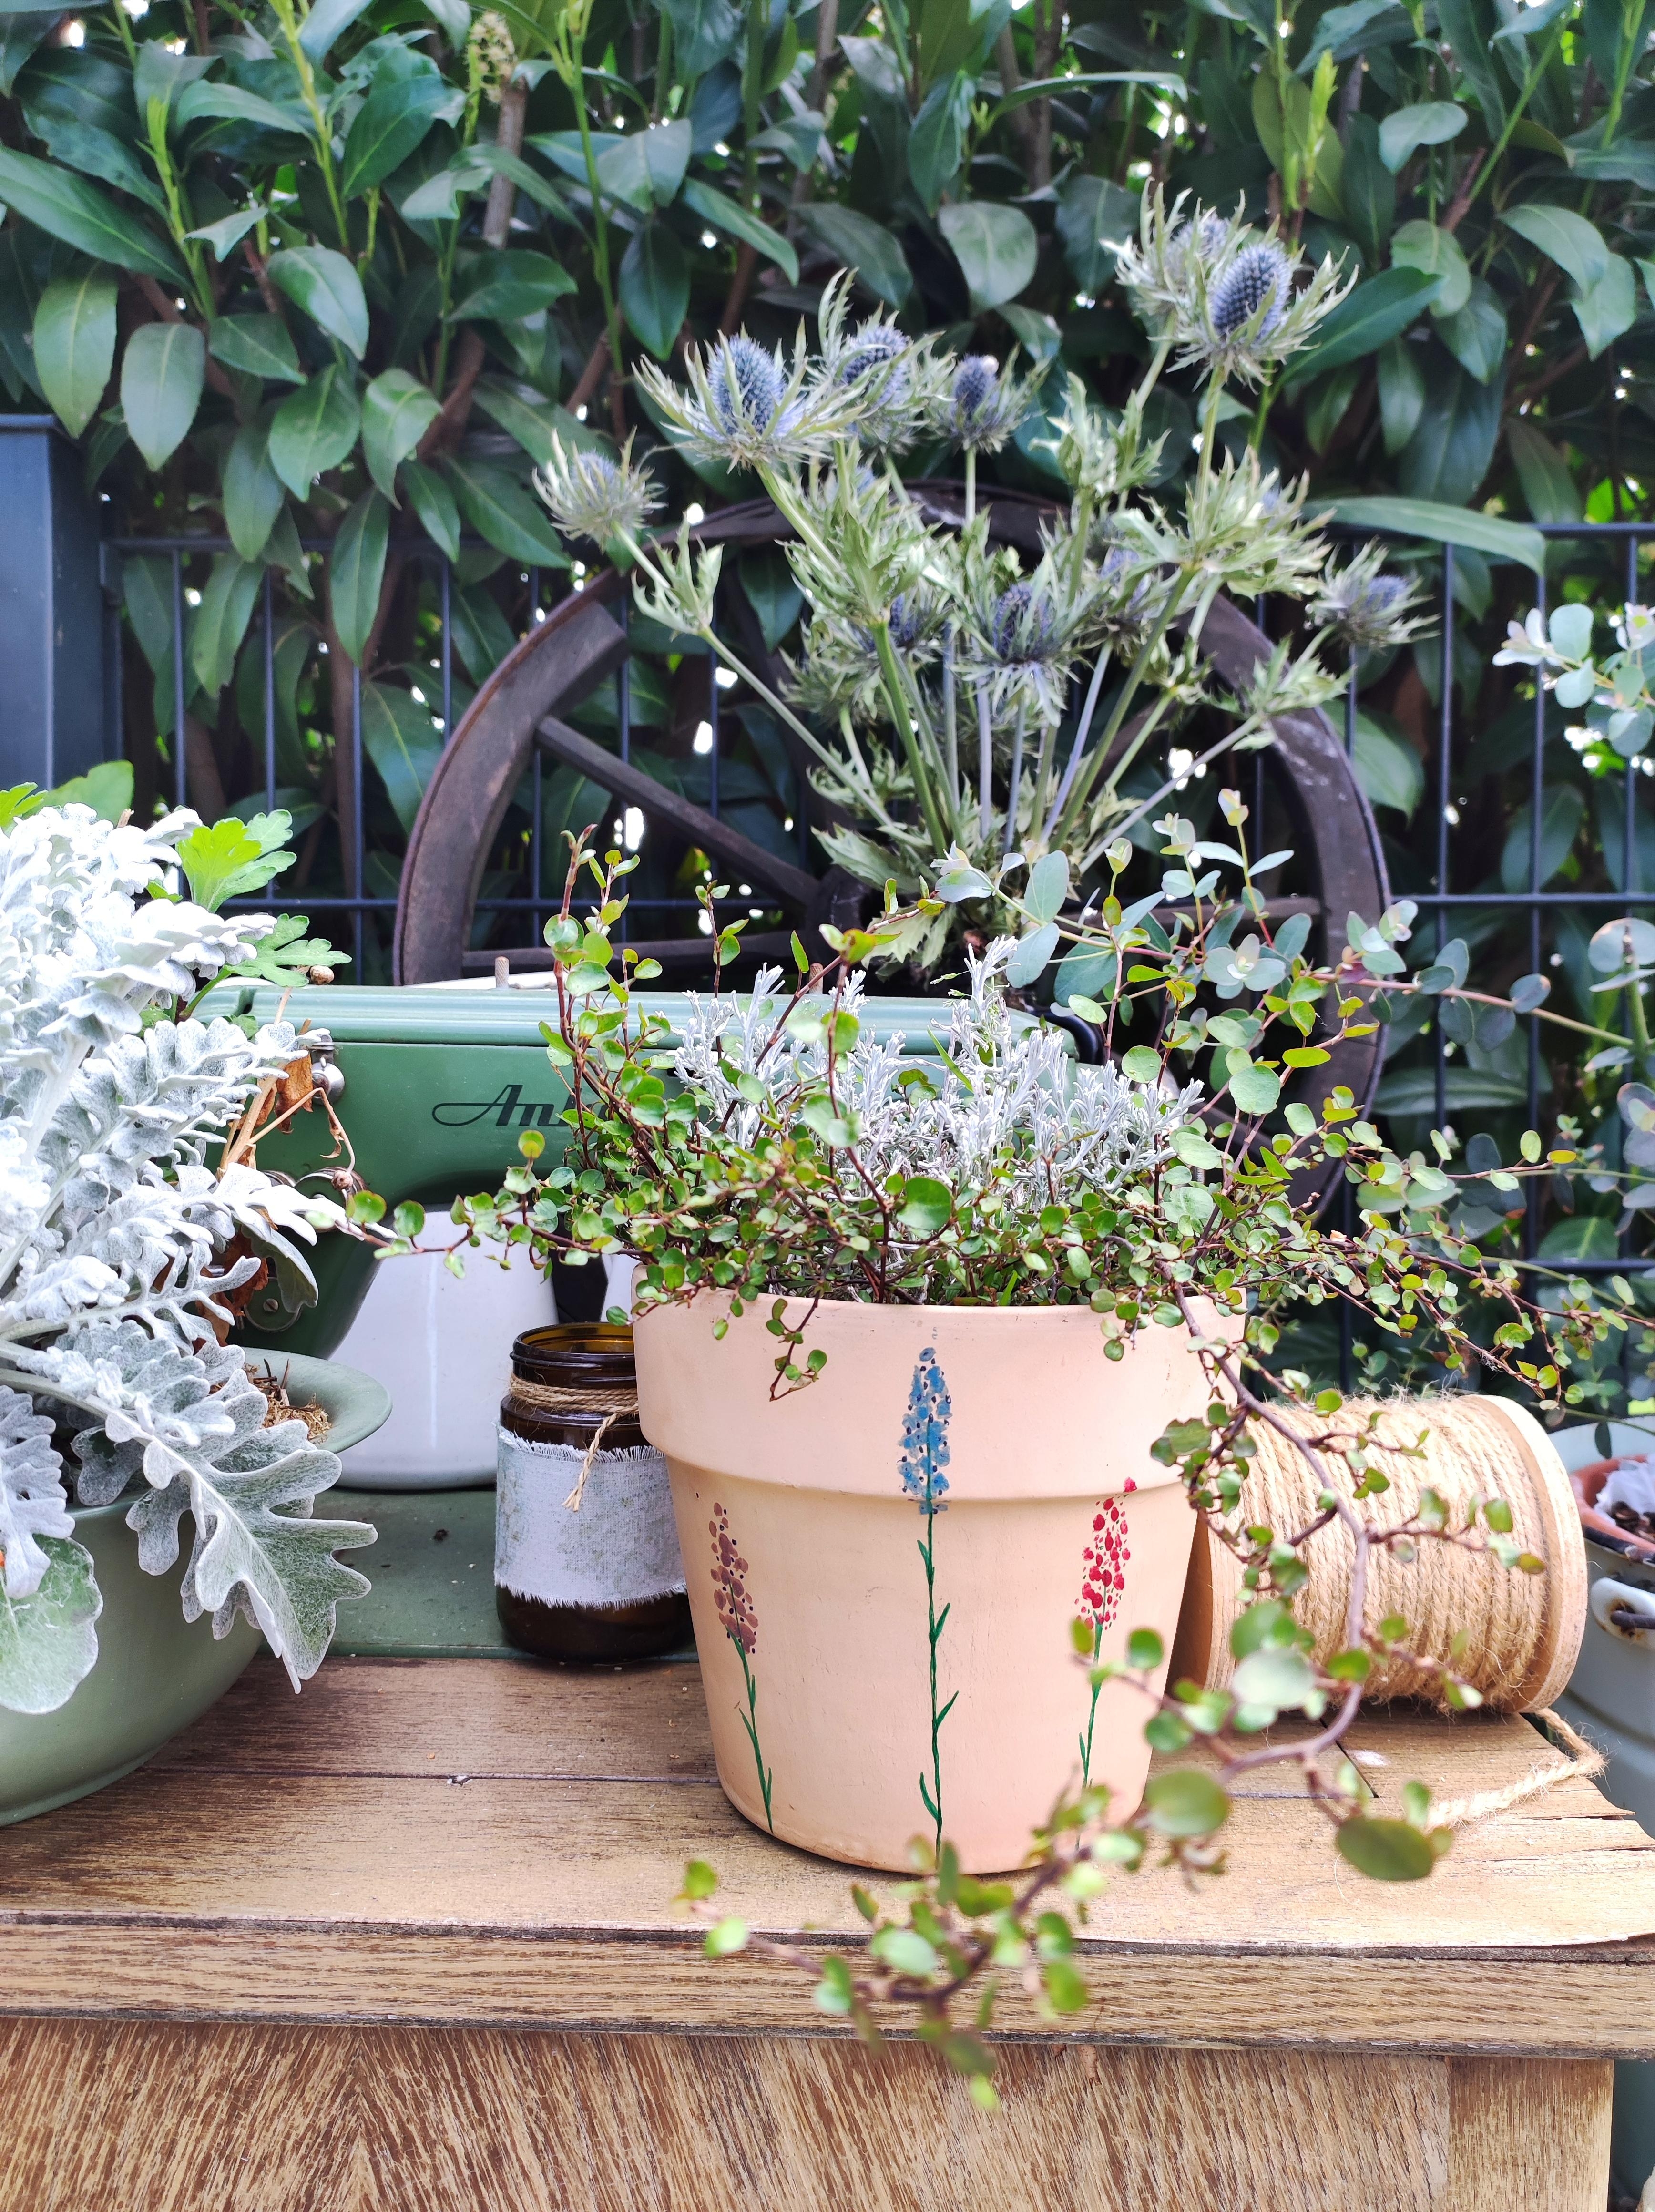 Garten verschönern mit selbsgemalten Töpfen 🪴 #frühling #diy #pflanzenliebe #deko #gartendeko #garten #shabbychic 